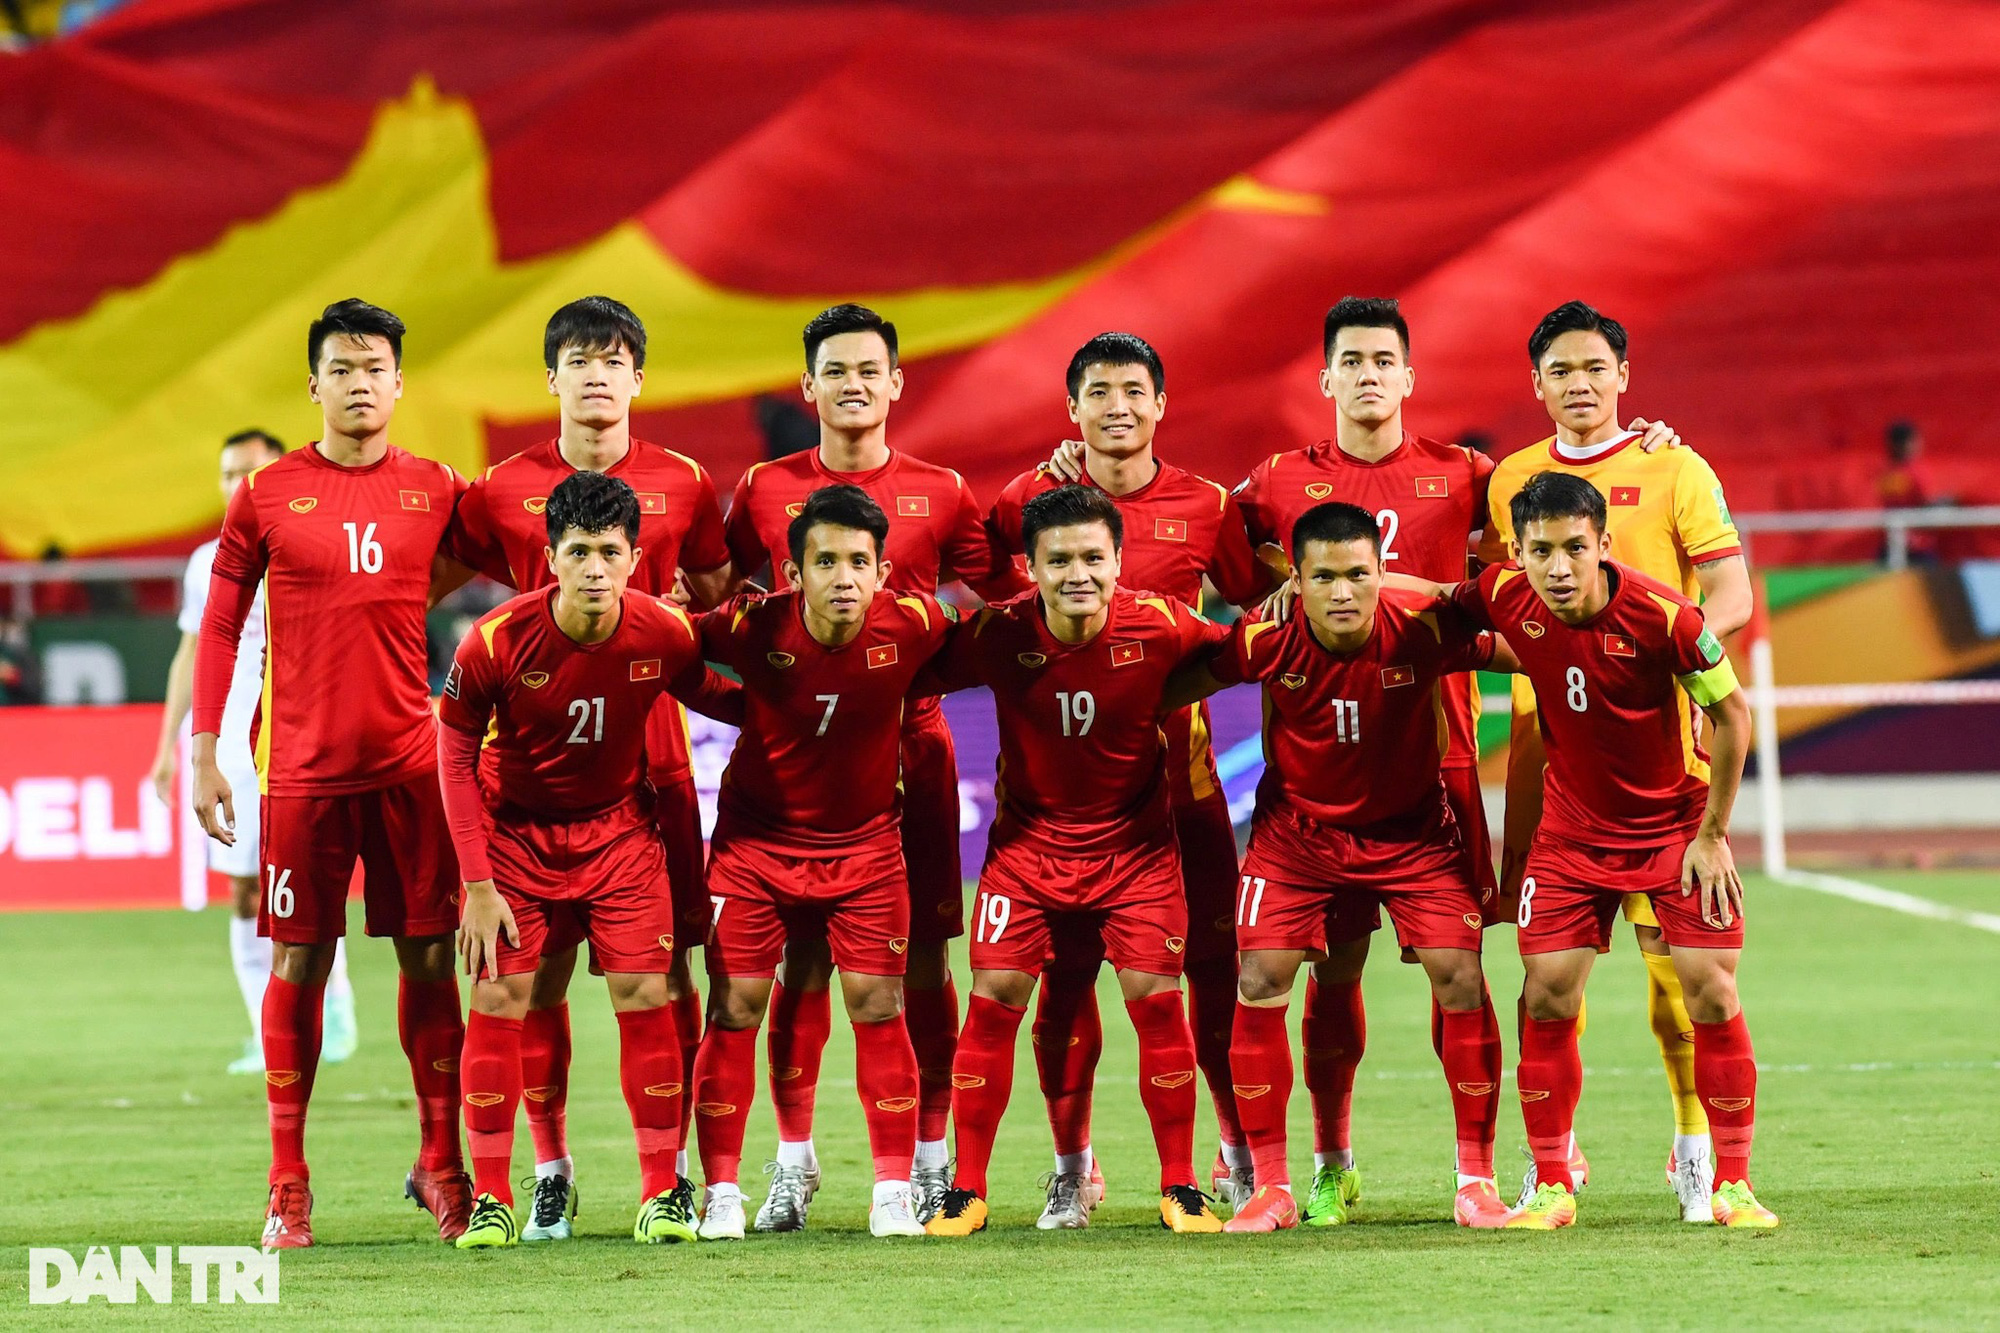 Chào mừng các bạn đến với bức ảnh liên quan đến đội tuyển Việt Nam. Đó là những khoảnh khắc hồi hộp tại sân cỏ, những chiến thắng và niềm tự hào của đất nước. Cùng đón xem và cổ vũ cho đội tuyển Việt Nam chinh phục những giấc mơ lớn.